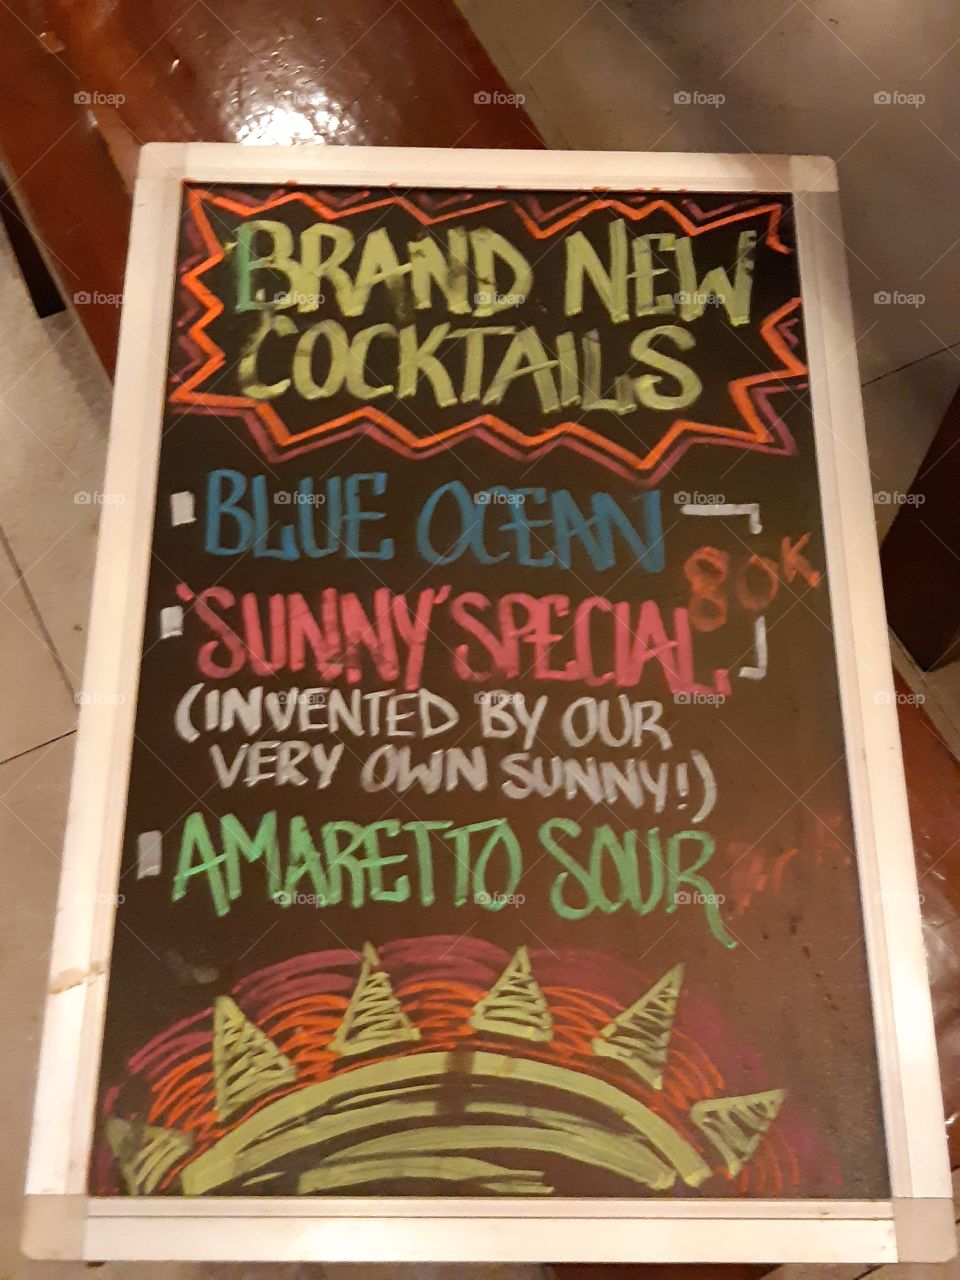 Cocktails for summer!